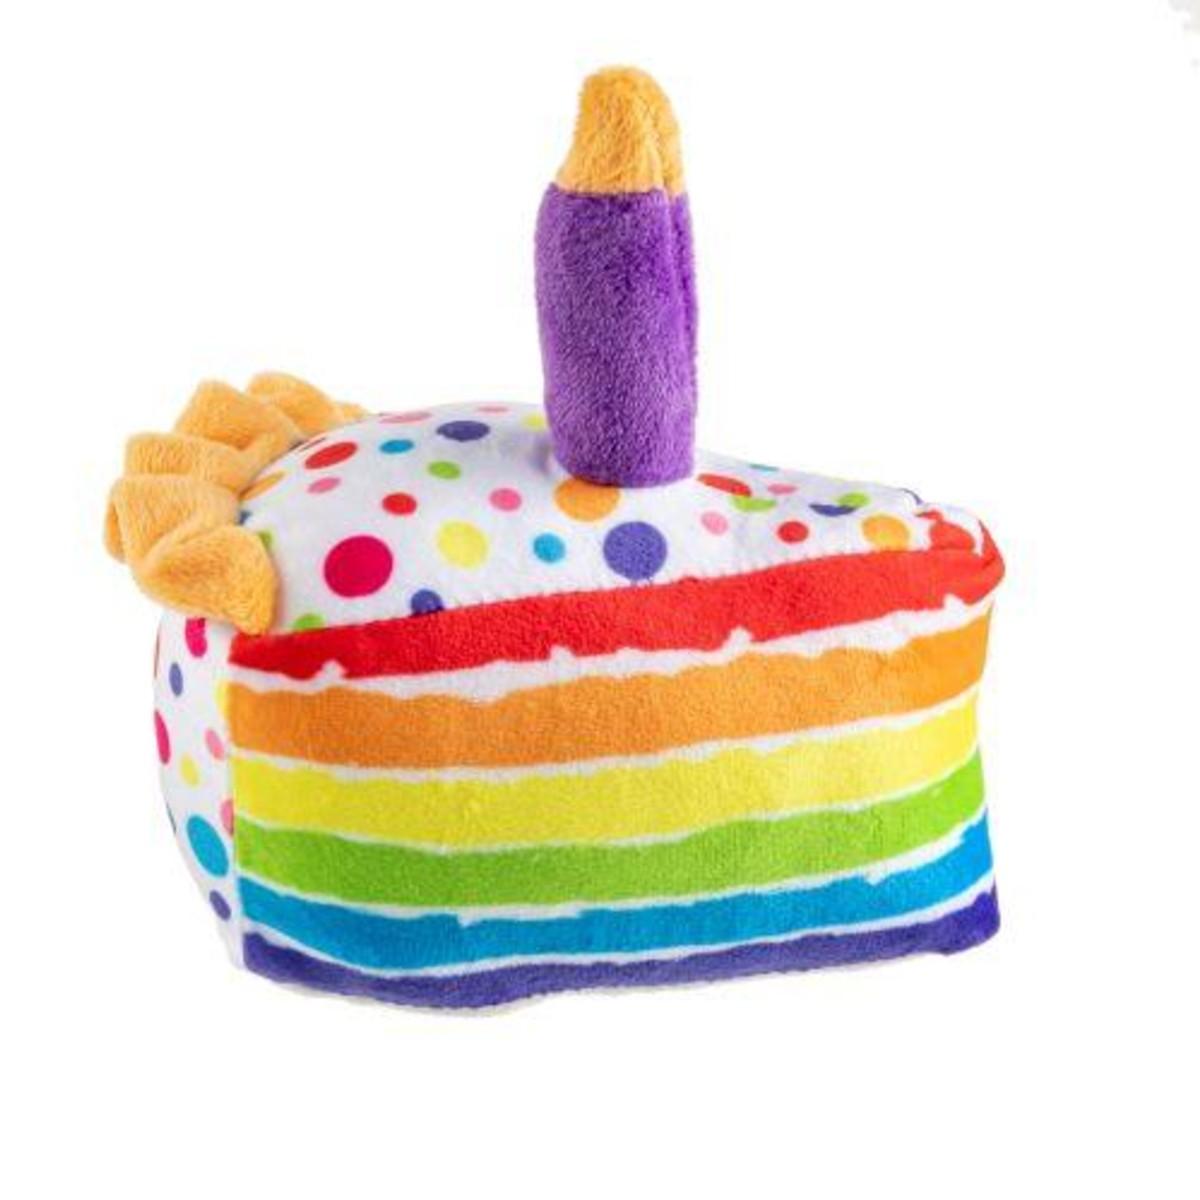 Haute Diggity Dog Happy Birthday Cake Slice Dog Toy